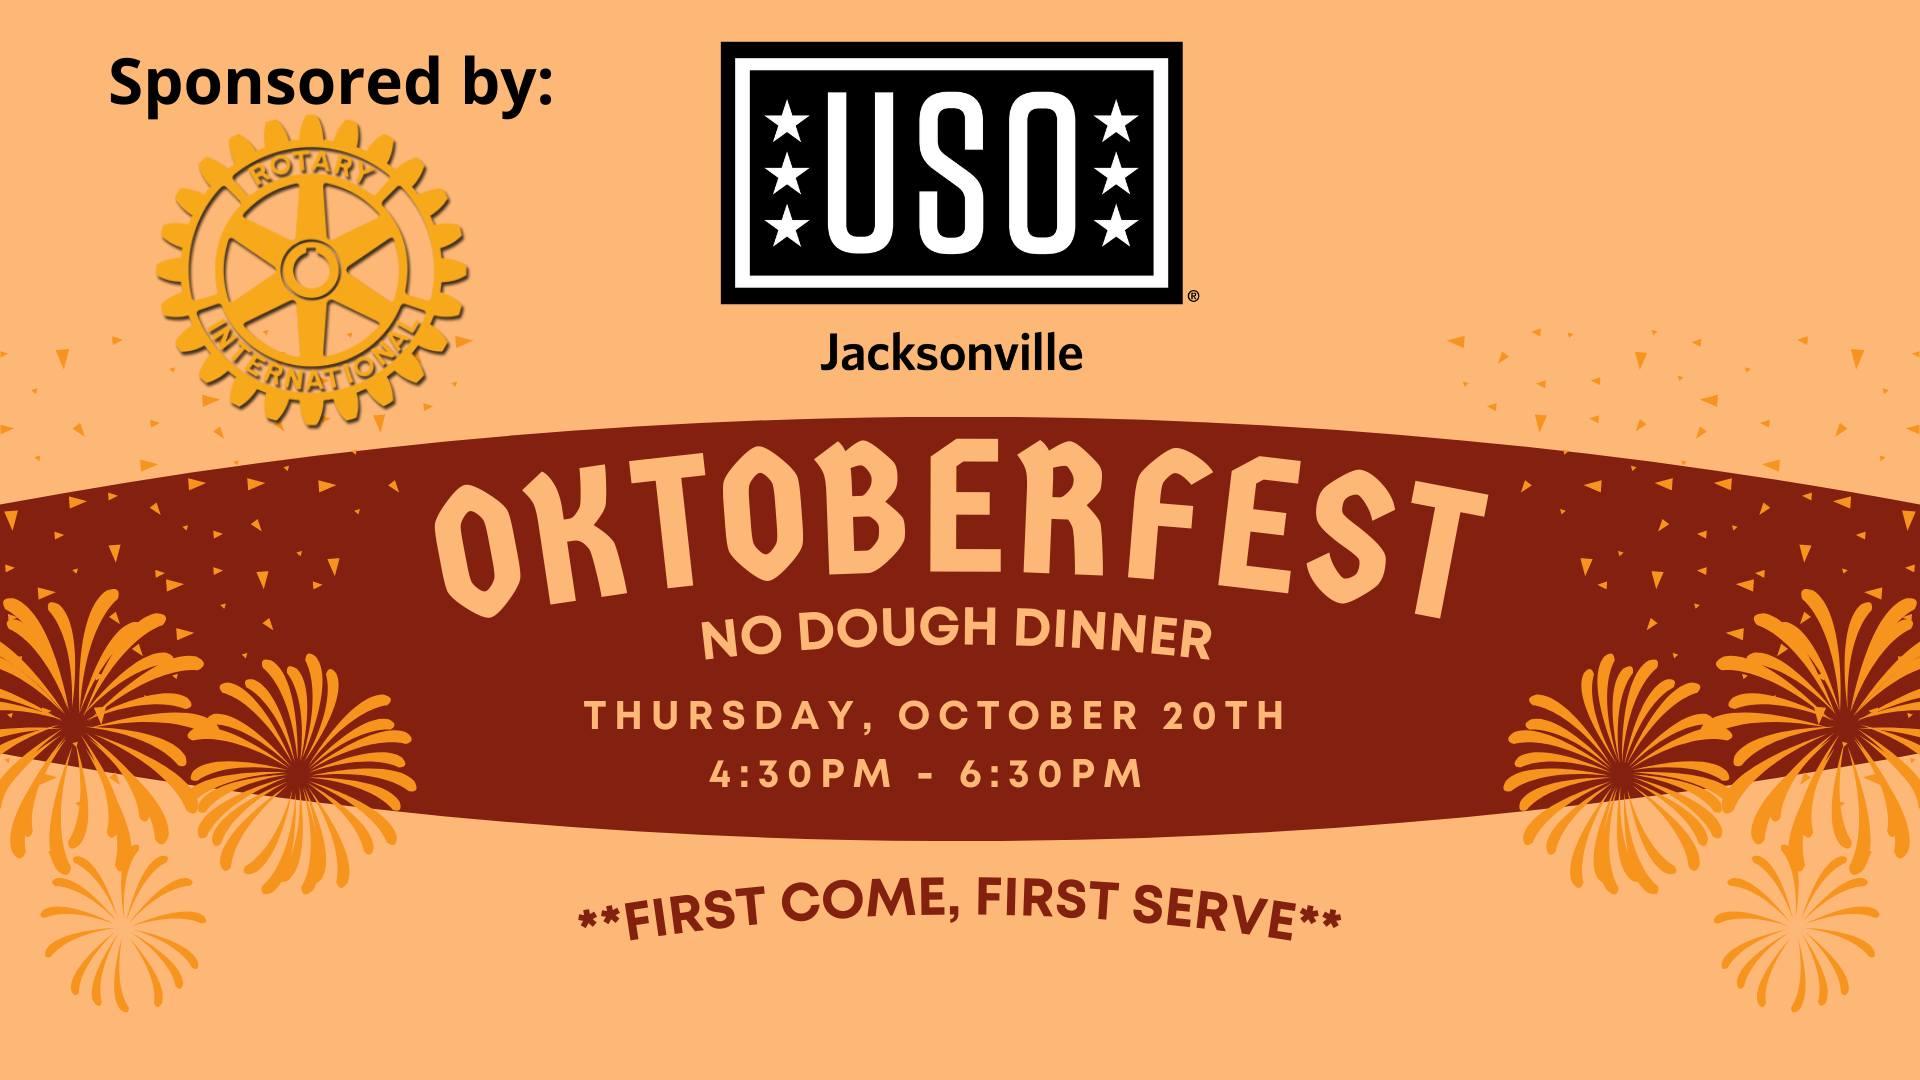 USO Mayport Oktoberfest No Dough Dinner
Thu Oct 20, 4:30 PM - Thu Oct 20, 6:30 PM